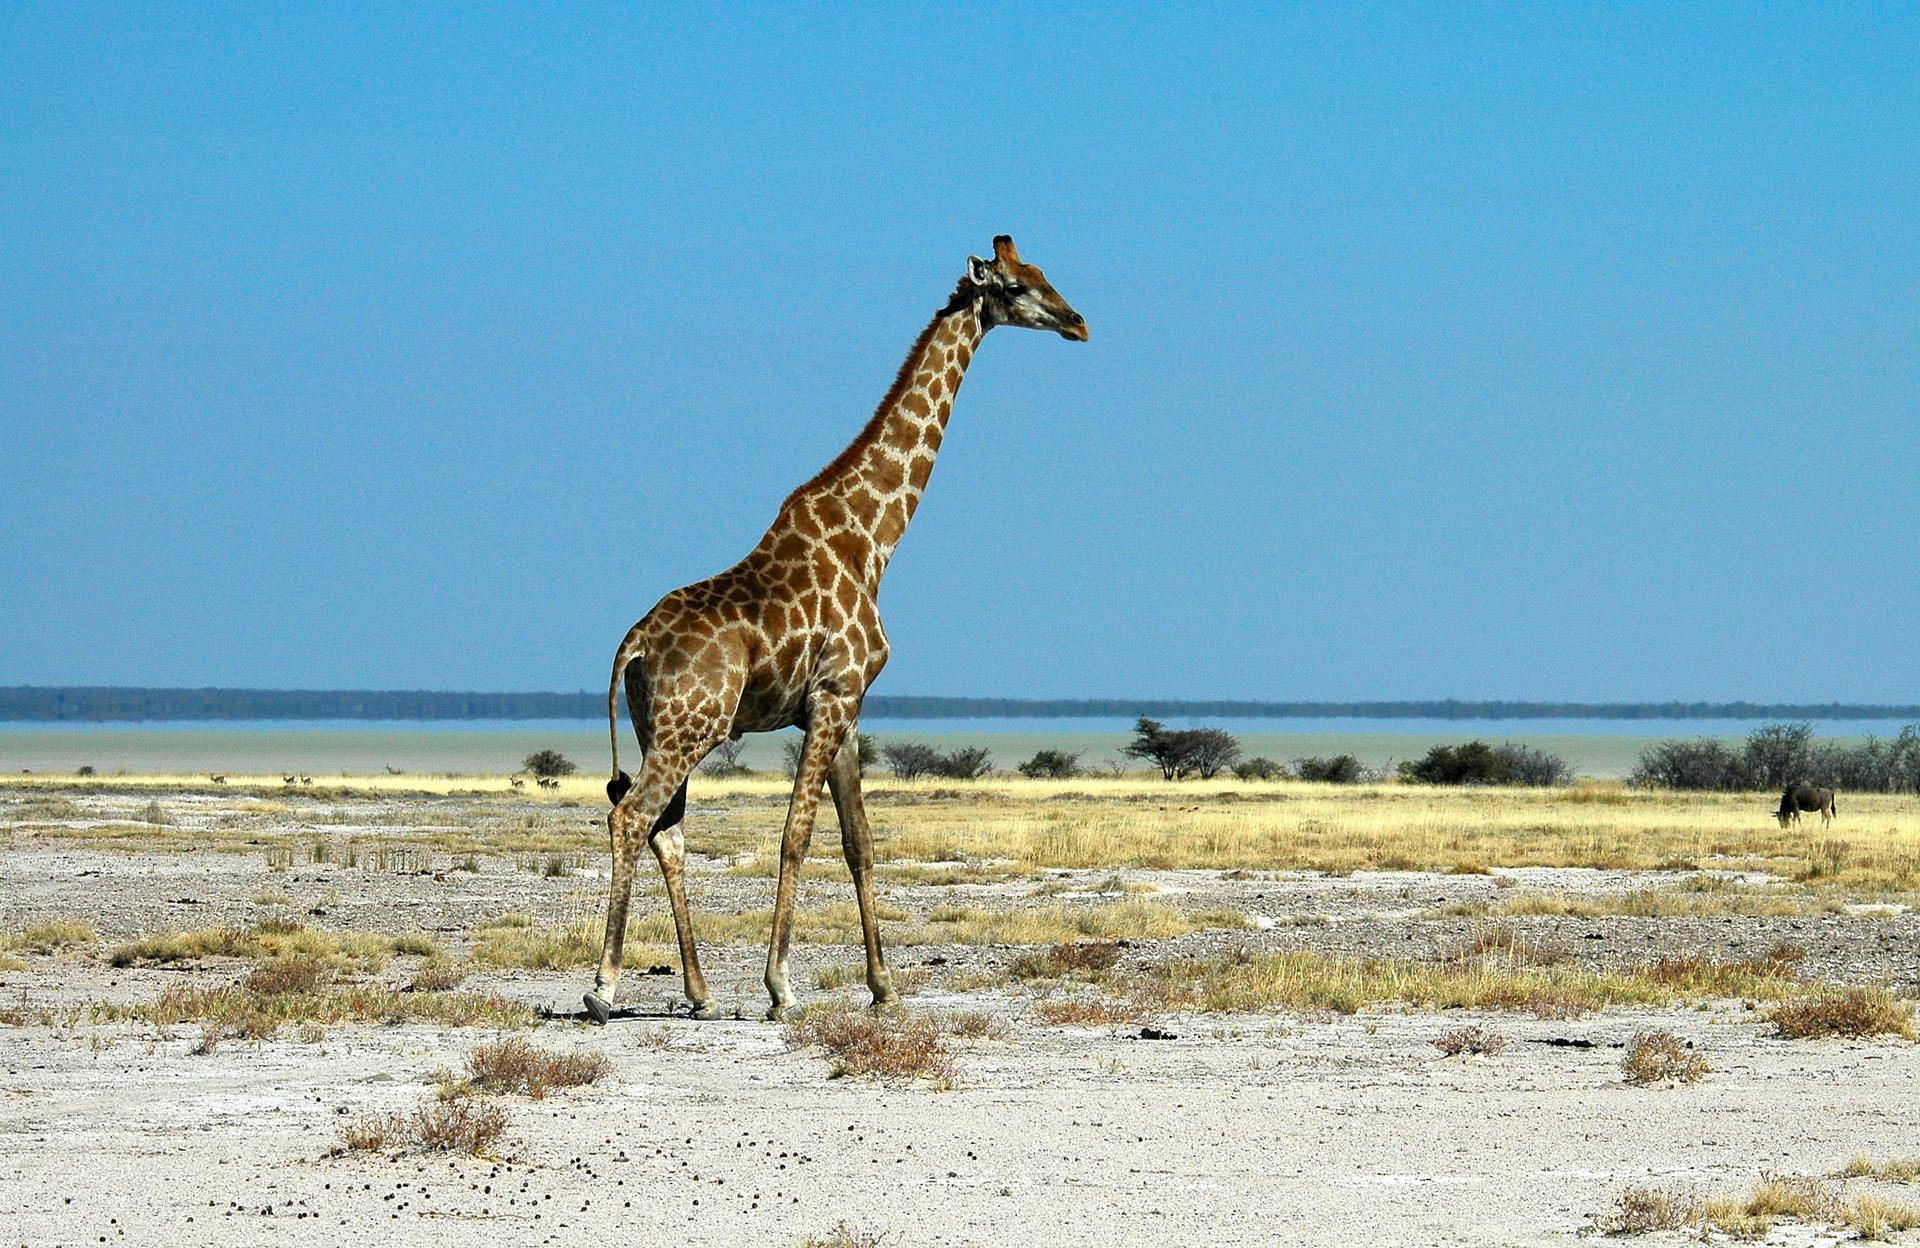 Botswana - Namibie - Zimbabwe - Autotour Routes Australes